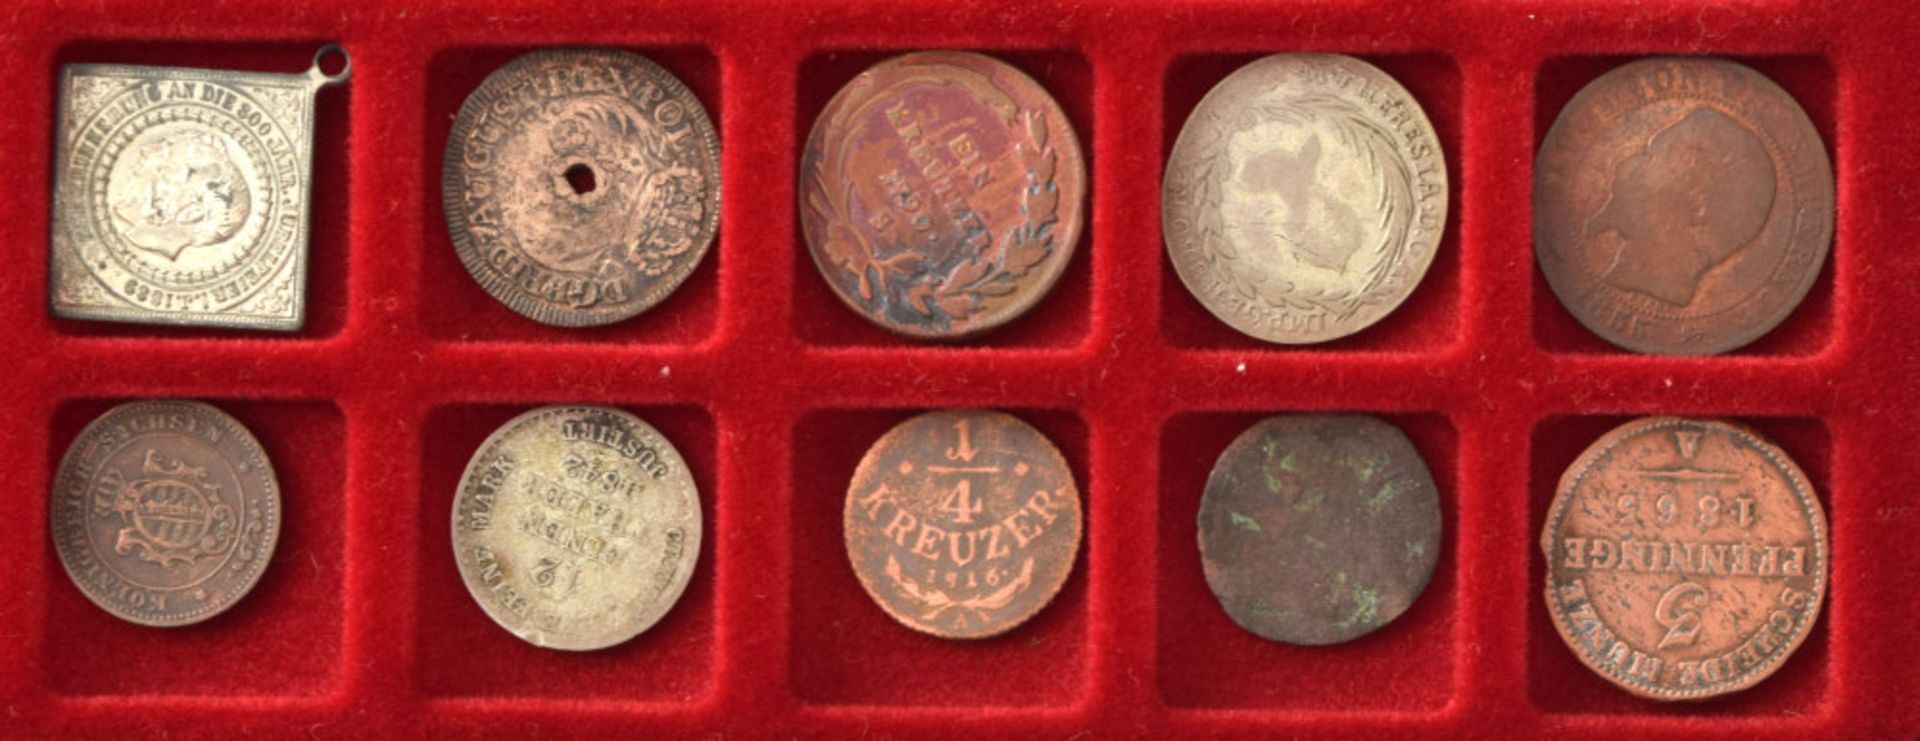 Sammlung Münzen und Medaillen - Image 6 of 12